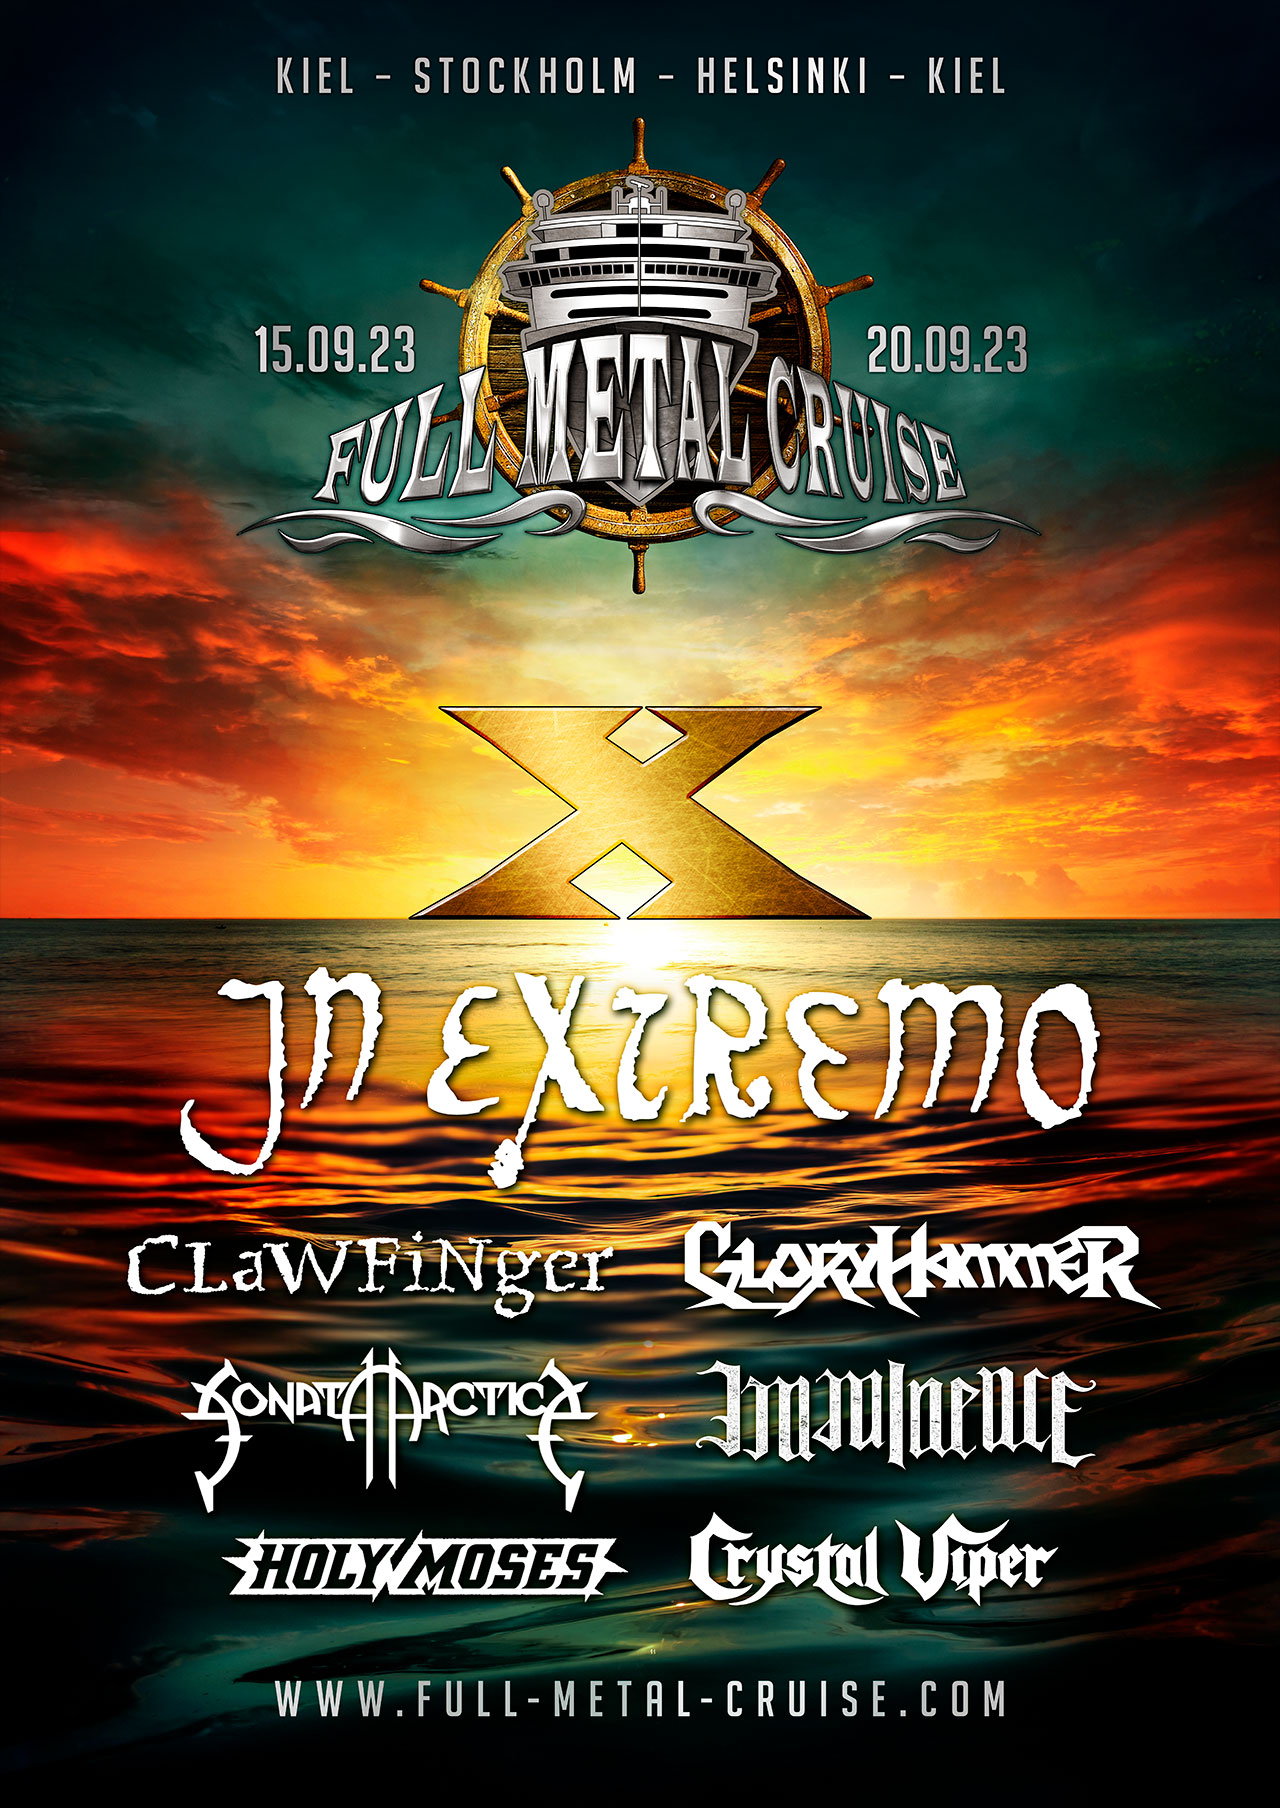 Buchungsstart & erste Bands für Full Metal Cruise X